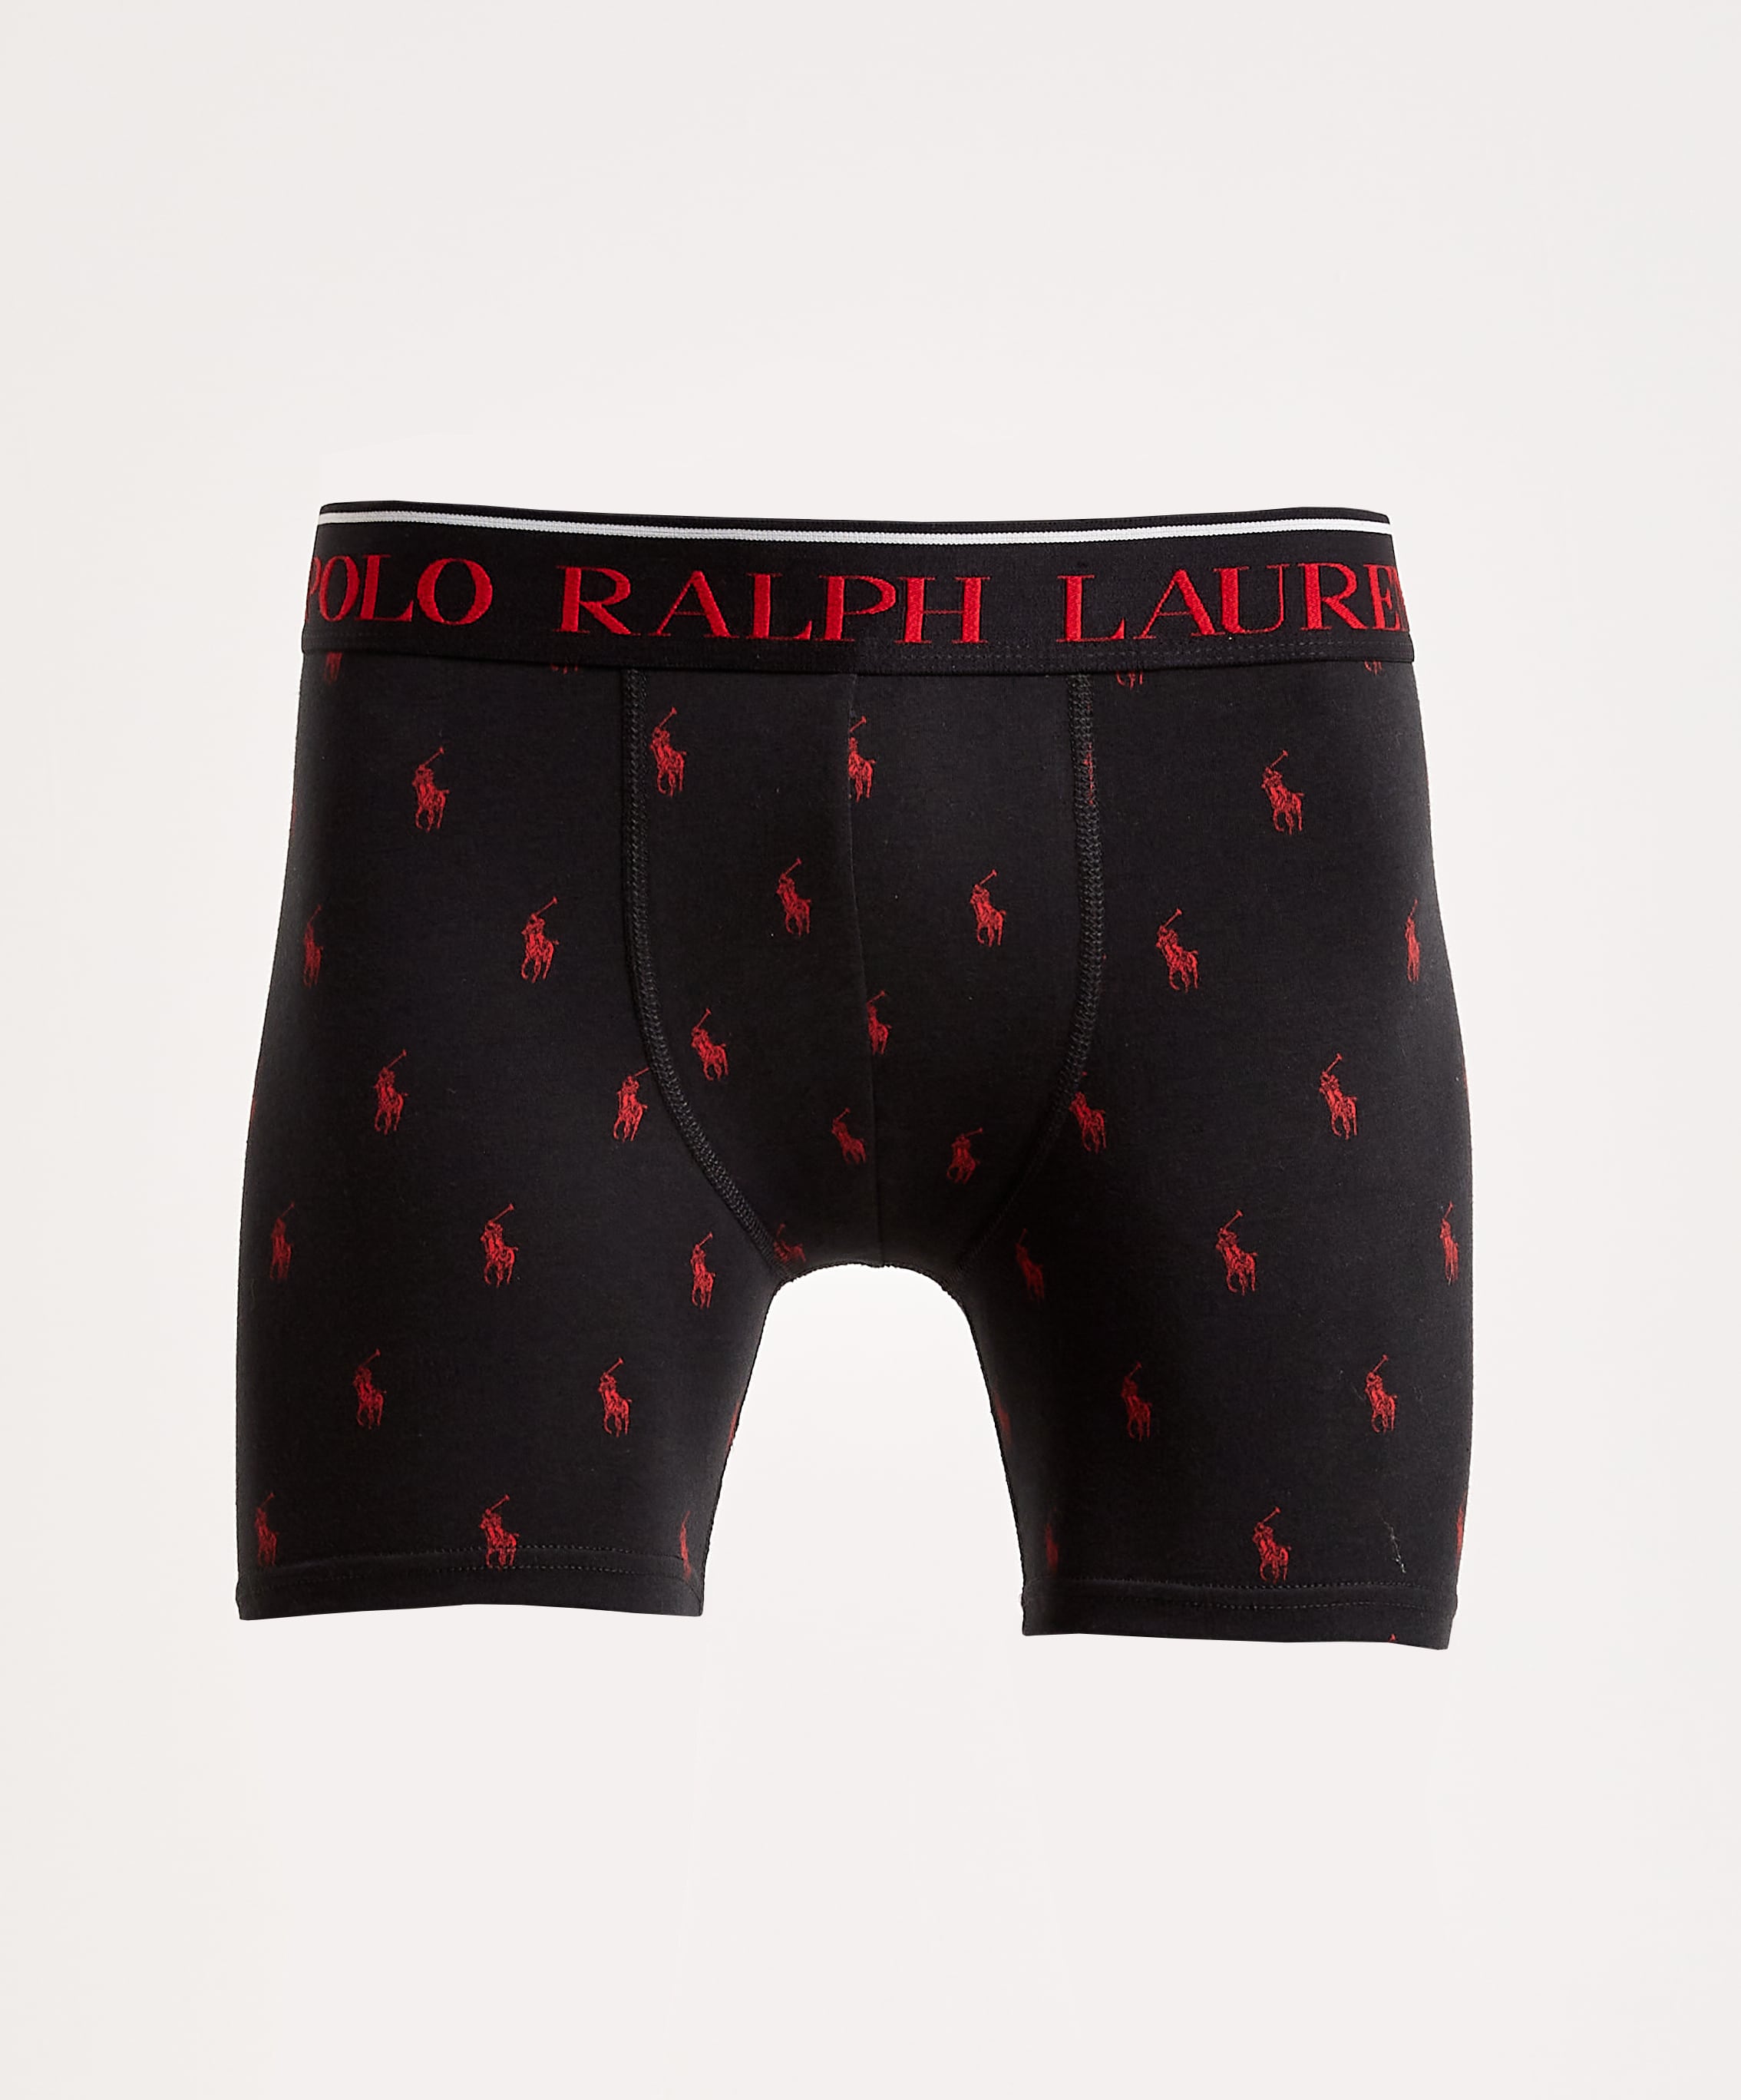 Polo Ralph Lauren 4D Flex Boxer Briefs 5-Pack – DTLR